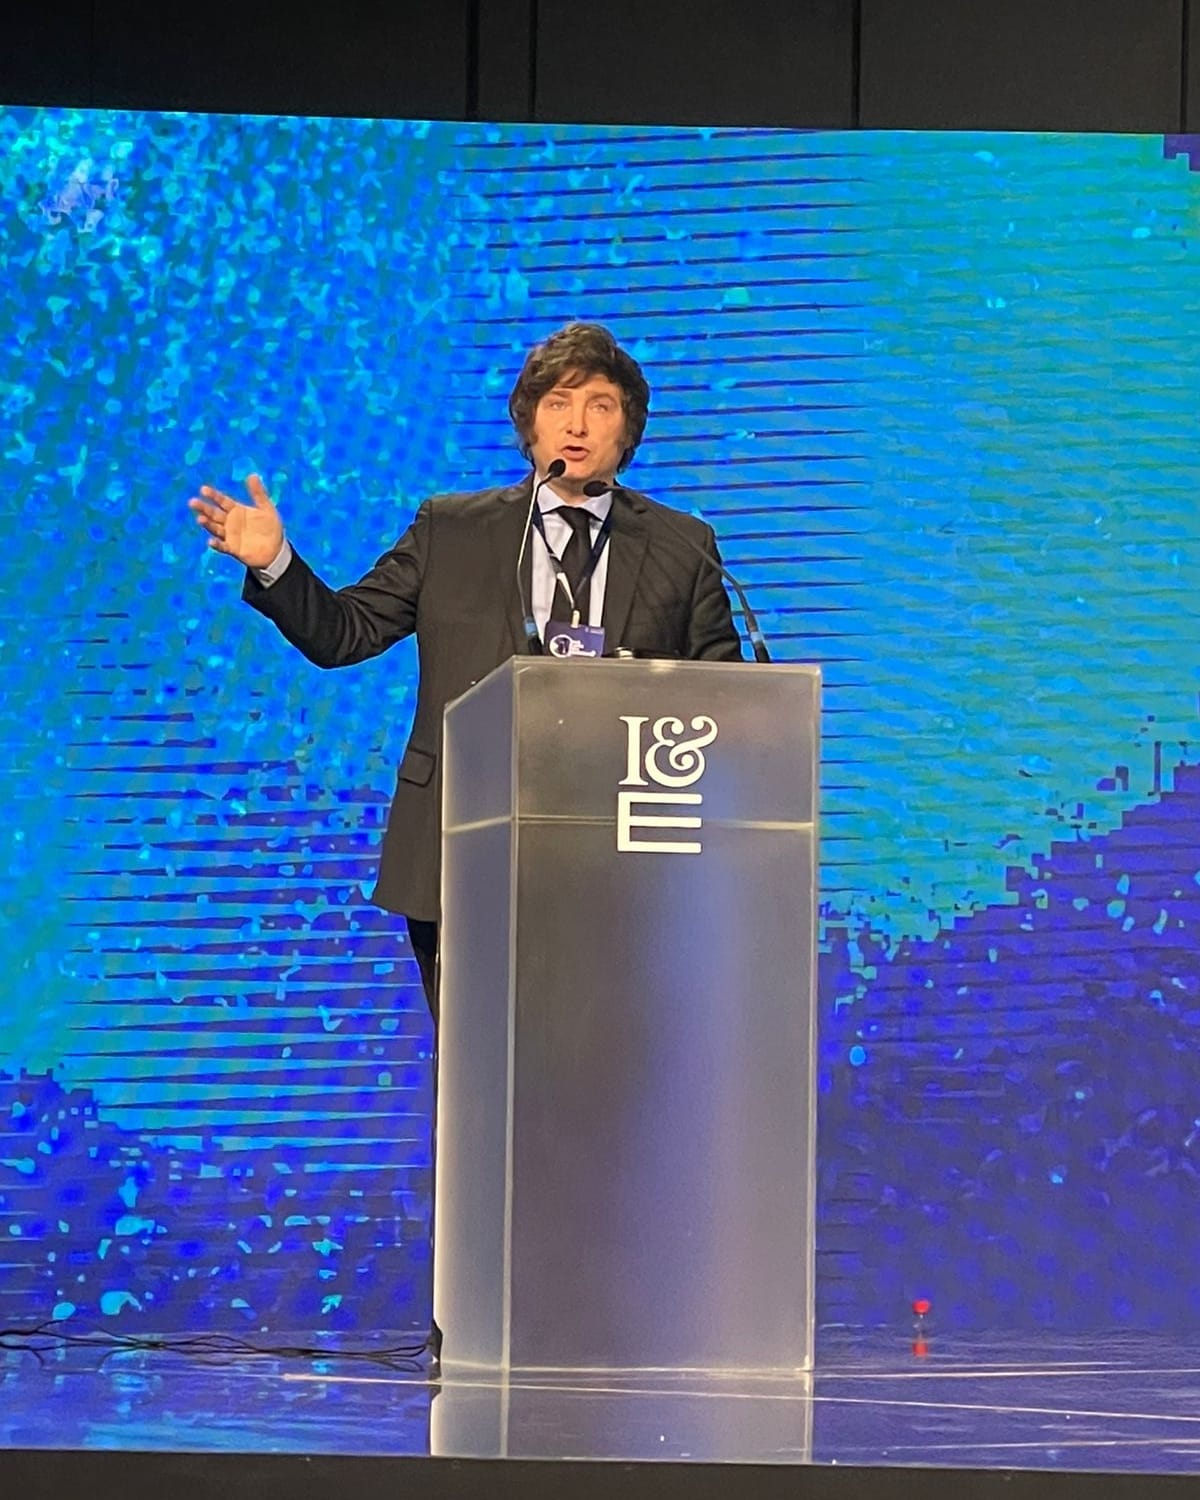 El diputado nacional Javier Milei participó del "Fórum da liberdade" 2022, dónde brindó una conferencia hablando sobre América Latina y la batalla cultural